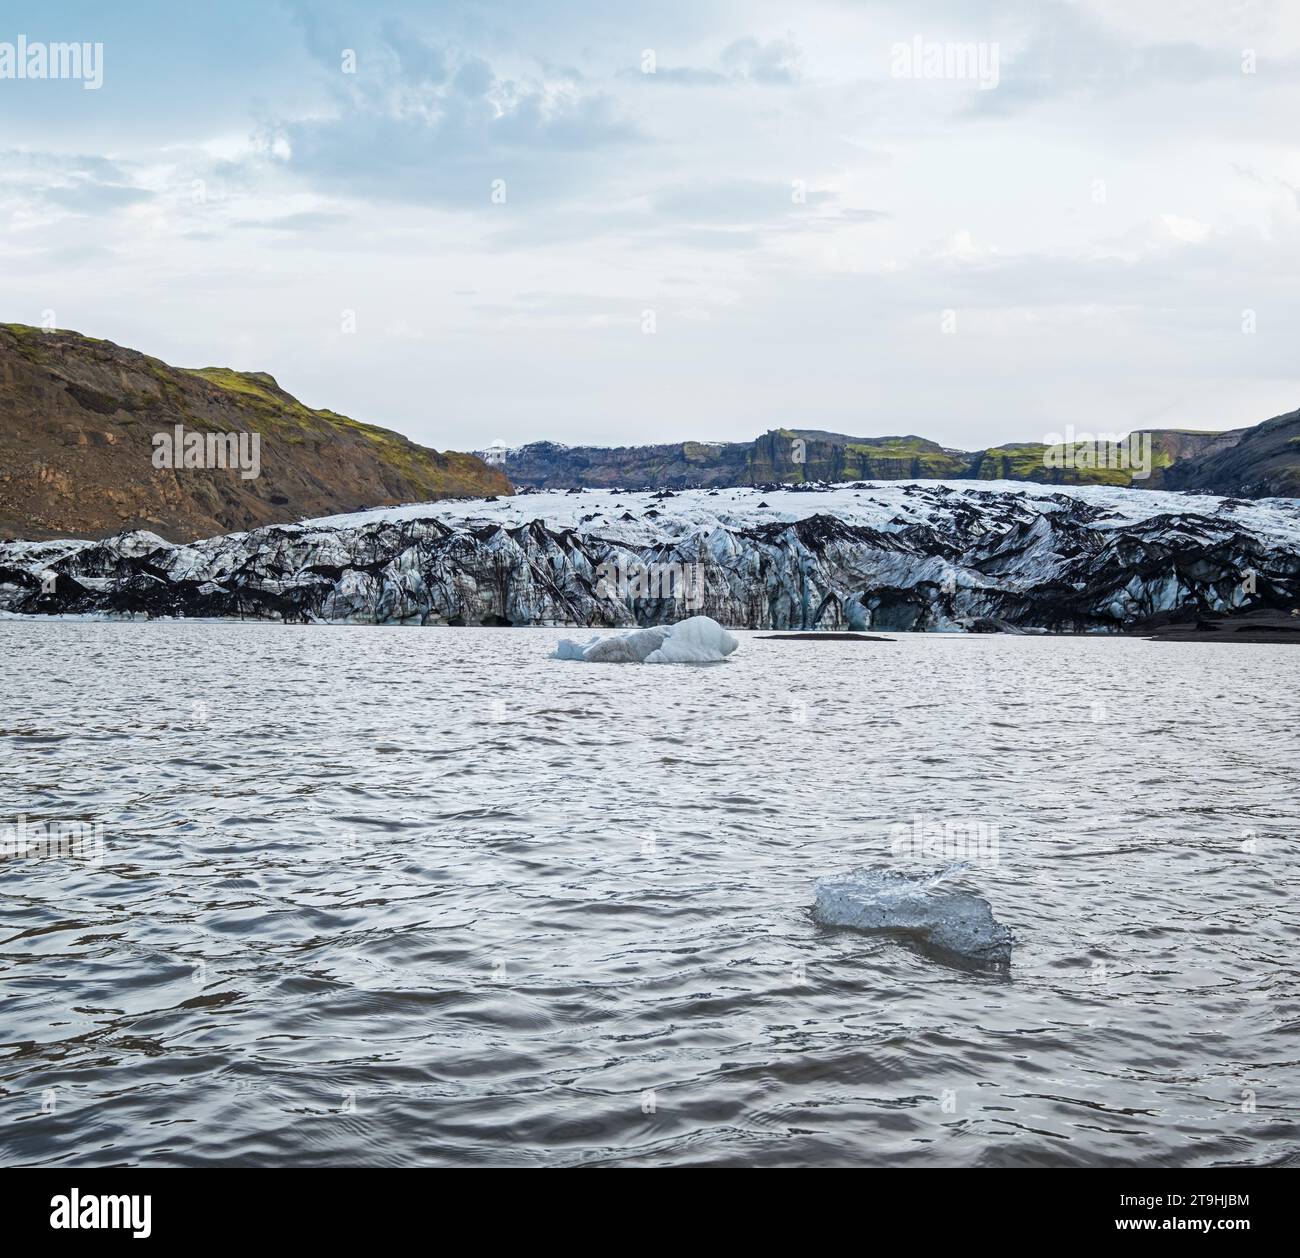 Solheimajokull pittoresco ghiacciaio nel sud dell'Islanda. La lingua di questo ghiacciaio scivola dal vulcano Katla. Bellissima laguna glaciale con lago b Foto Stock